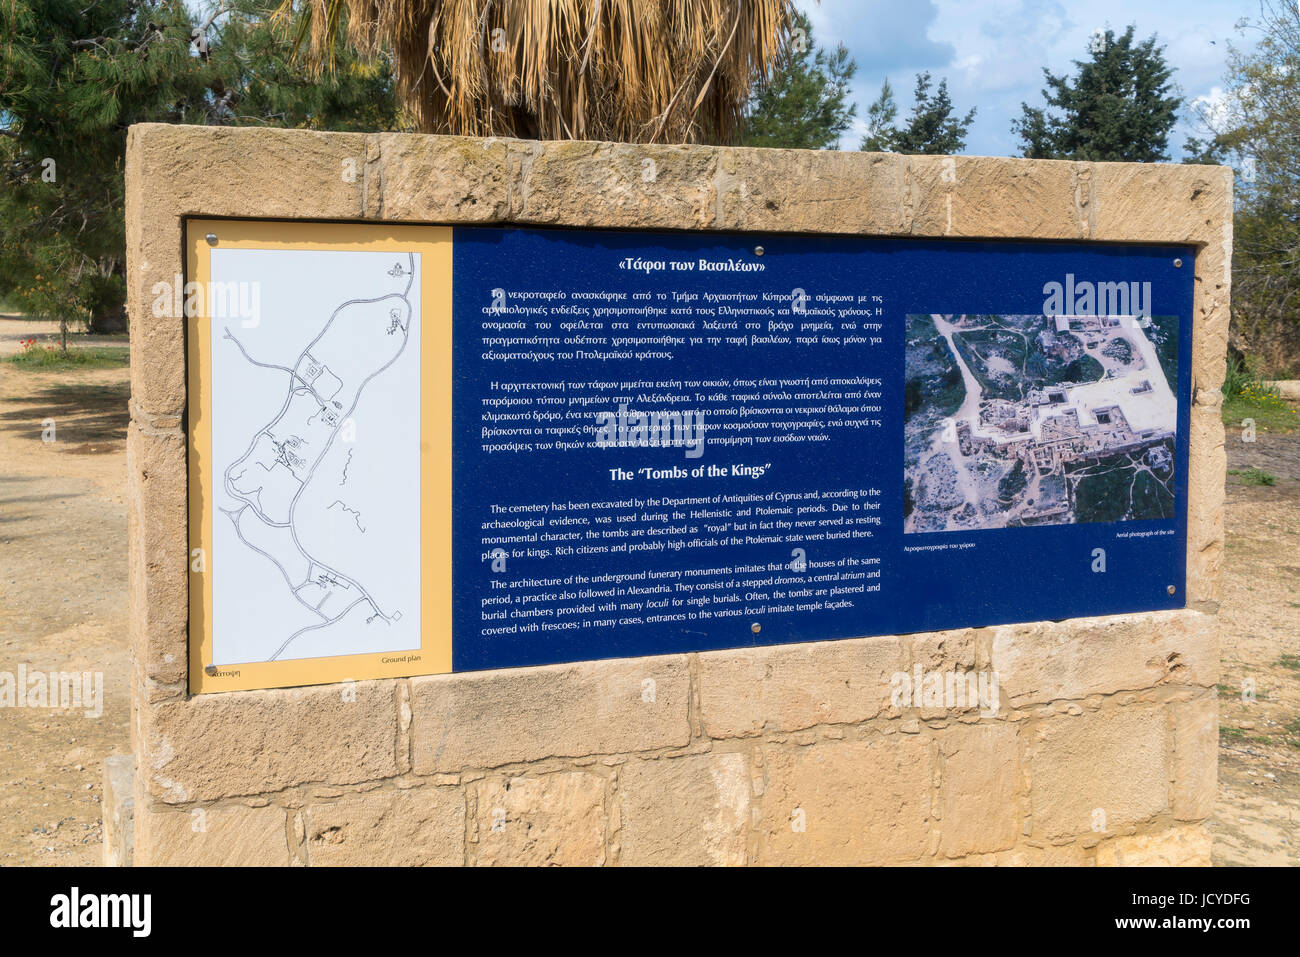 Las tumbas de los Reyes, Pafos, Kato Paphos, Chipre Foto de stock